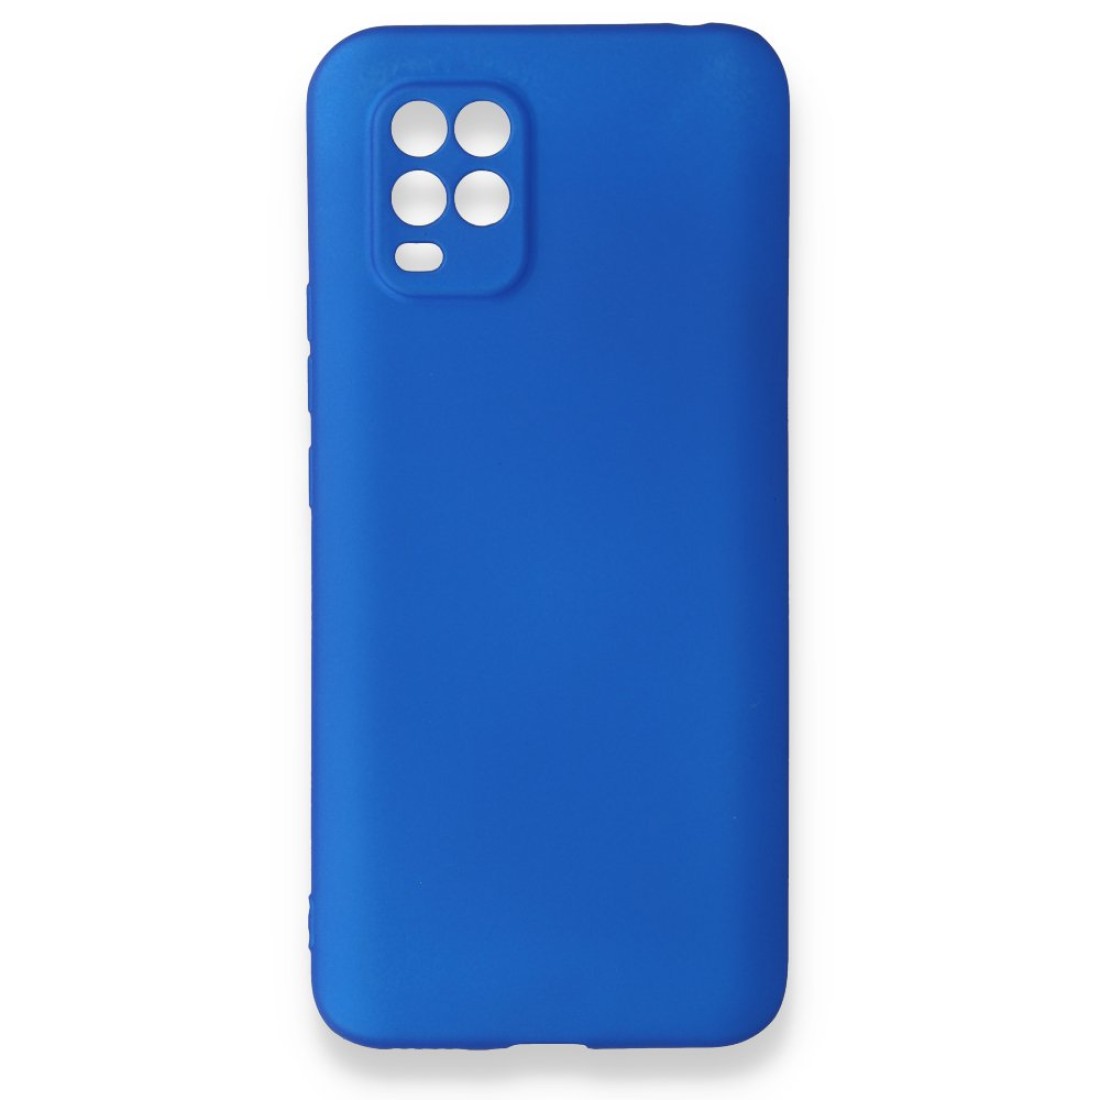 Xiaomi Mi 10 Lite Kılıf Premium Rubber Silikon - Mavi